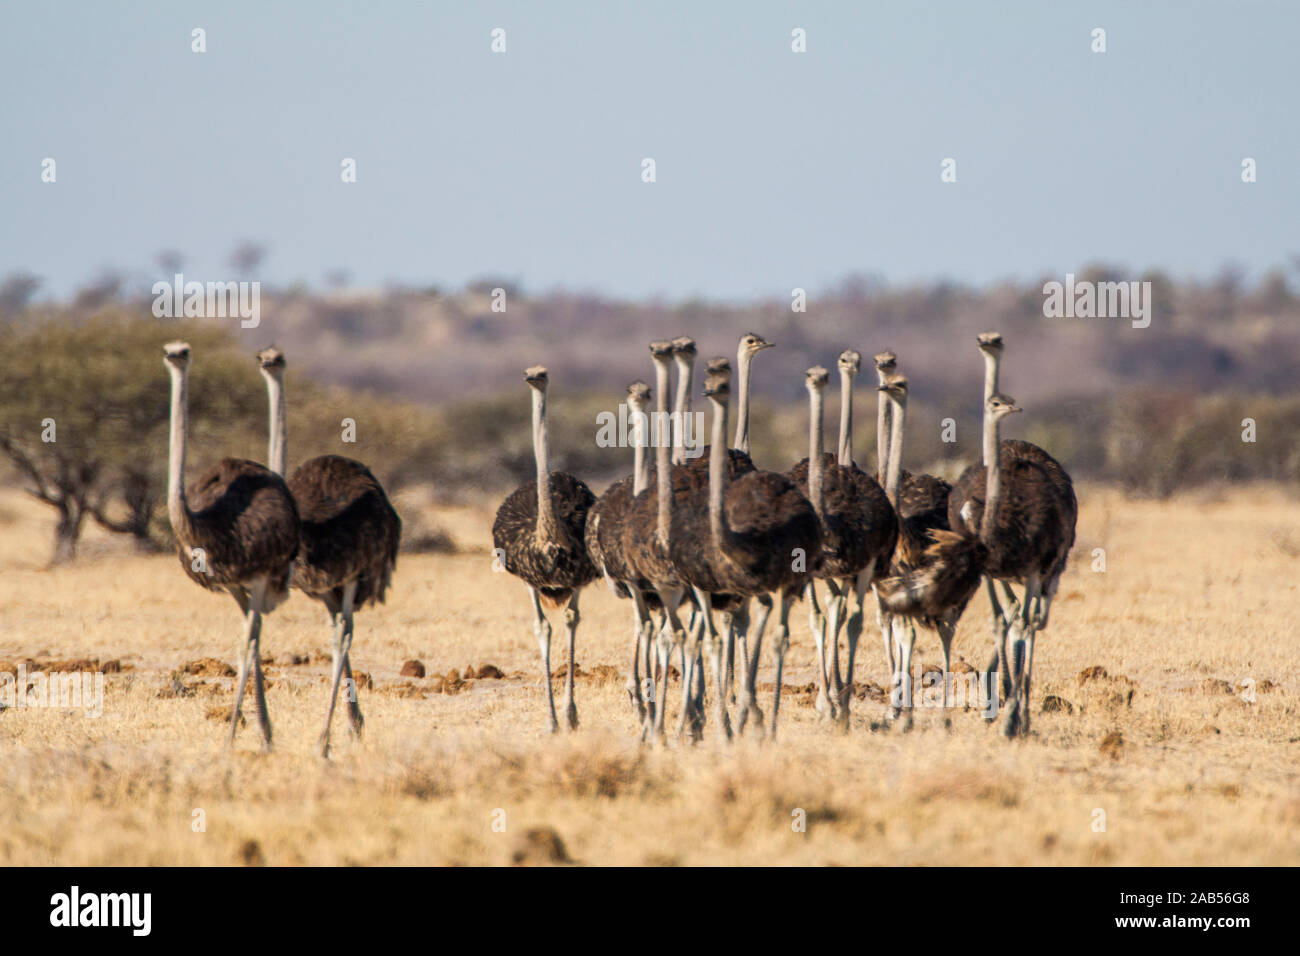 Afrikanische Strauße (Struthio camelus) Stock Photo